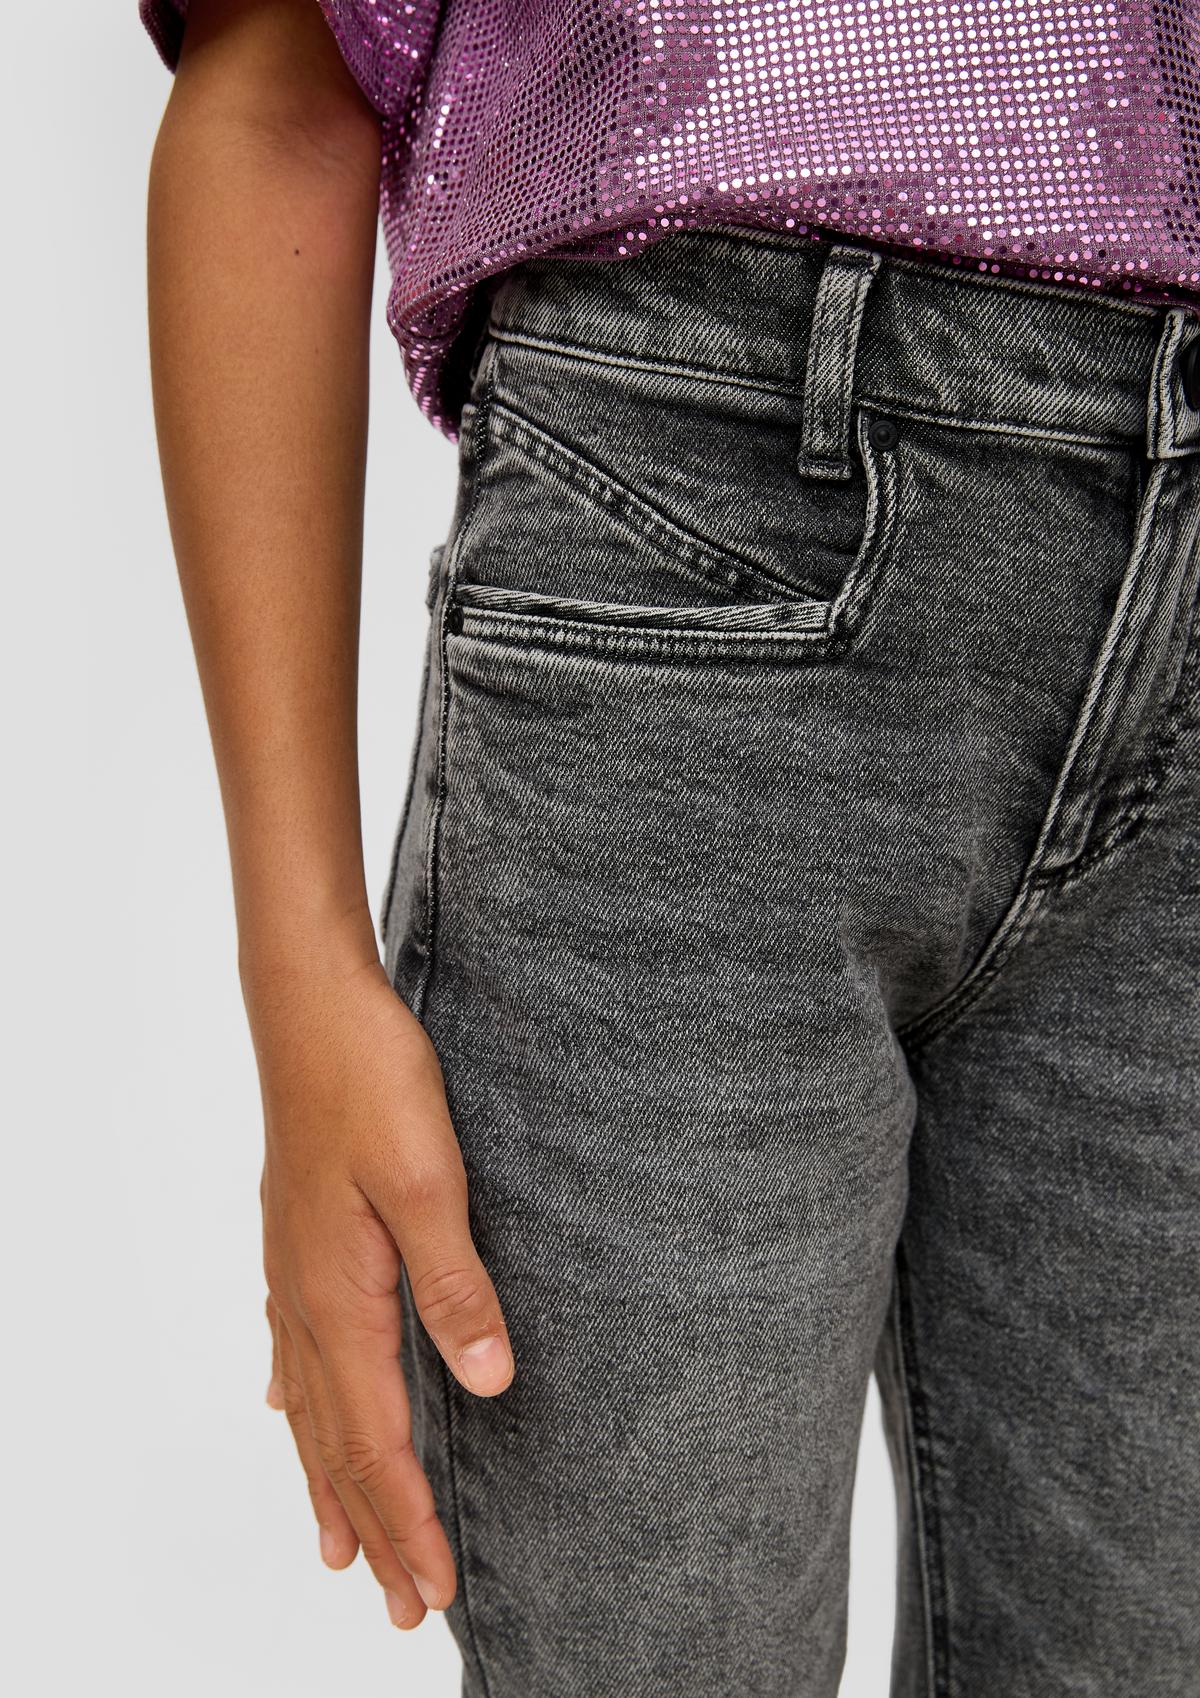 s.Oliver Jeans hlače/kroj Relaxed Fit/High Rise/ravne hlačnice